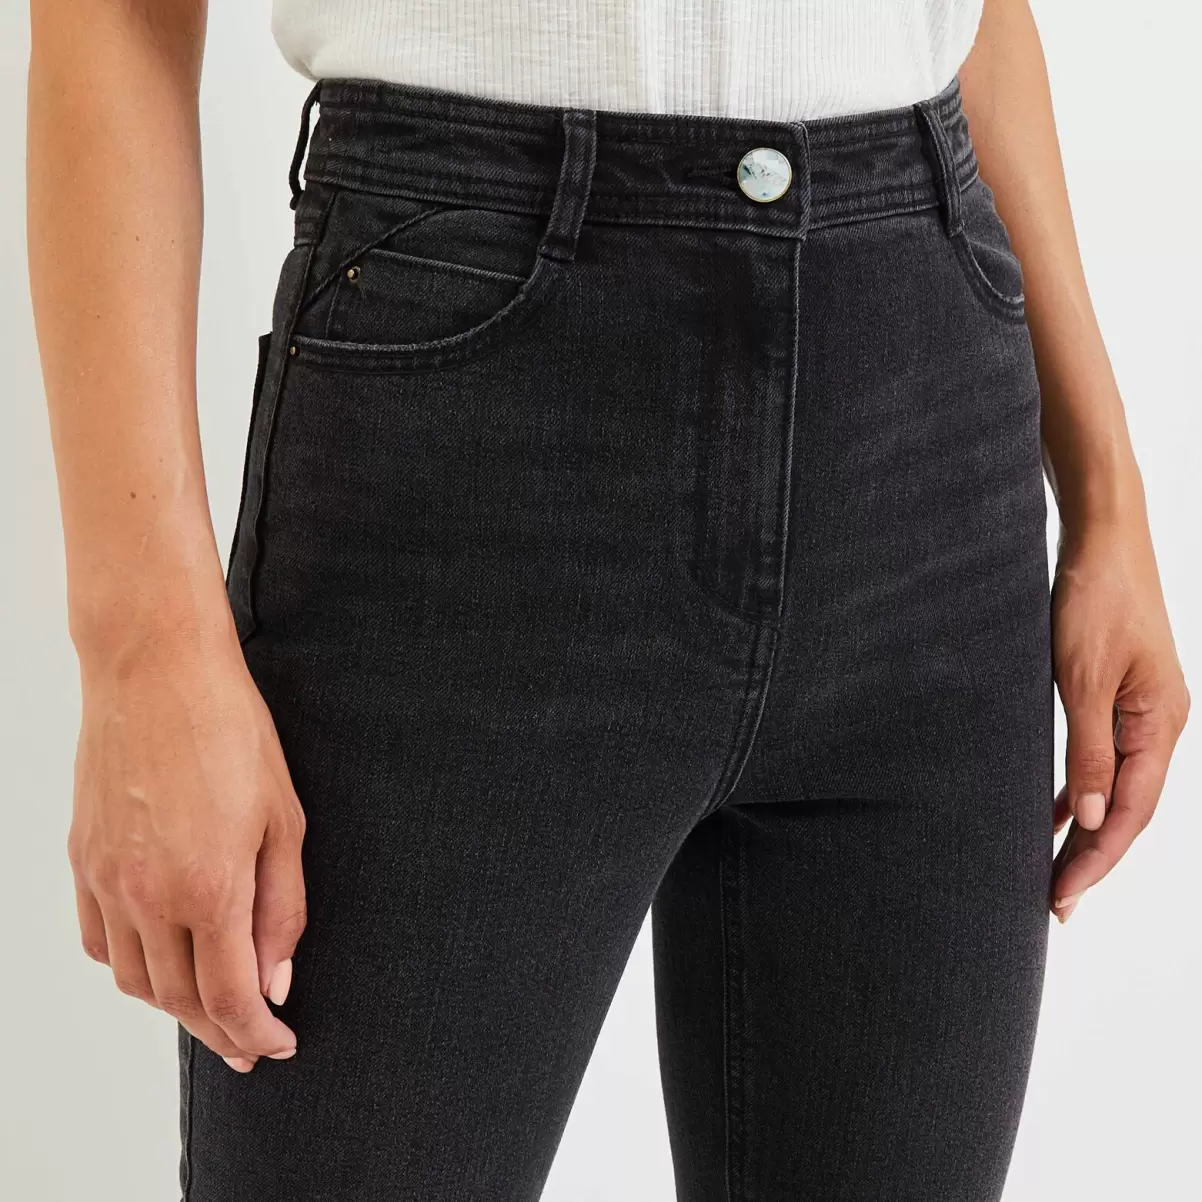 Black Washed Entendre Jeans Femme Grain De Malic Jeans Mum Taille Haute - 2